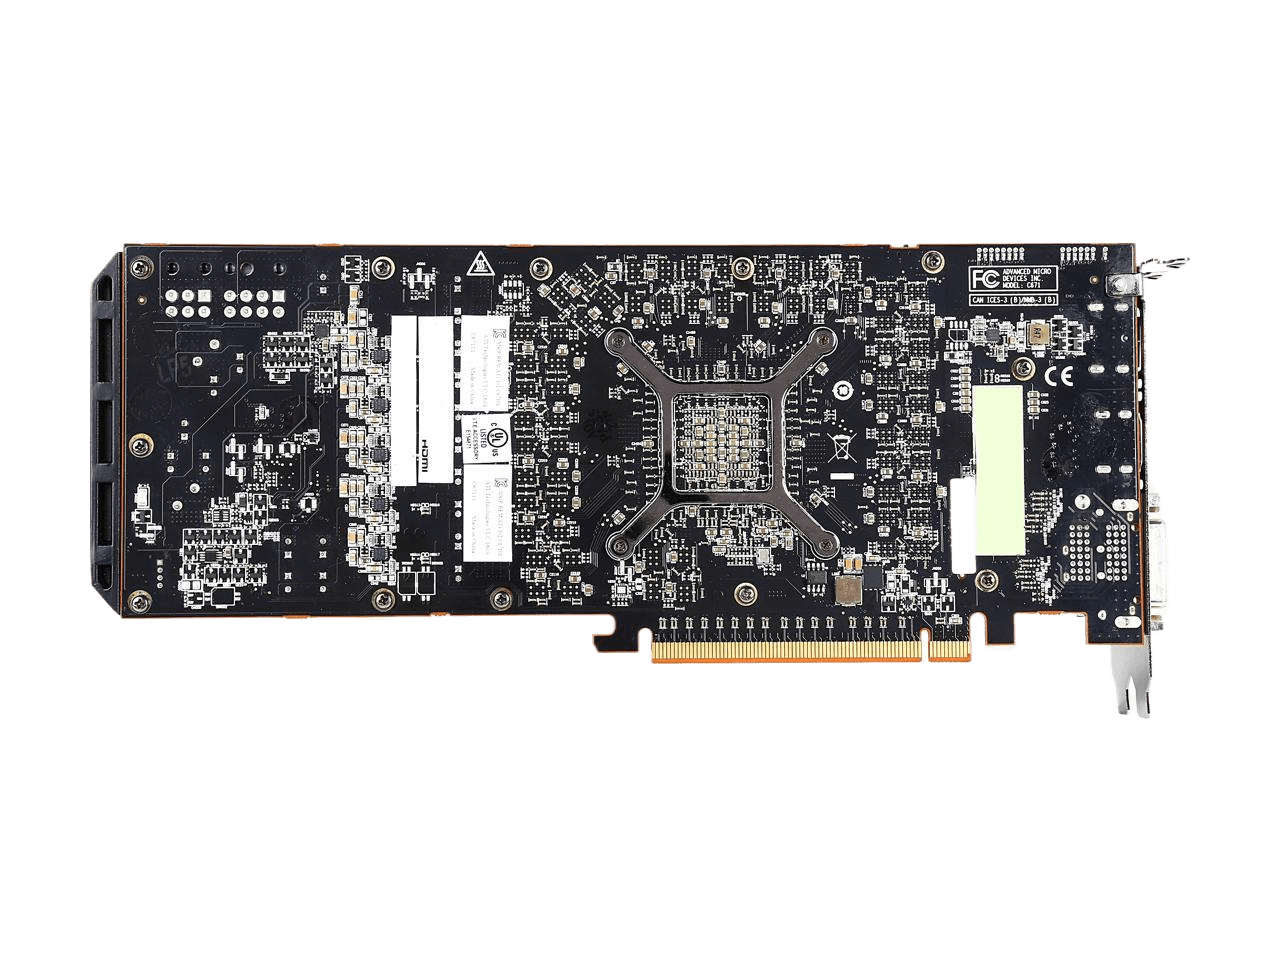 SAPPHIRE Radeon R9 290 4GB GDDR5 PCI Express 3.0 x16 CrossFireX Support Video Card 100362SR